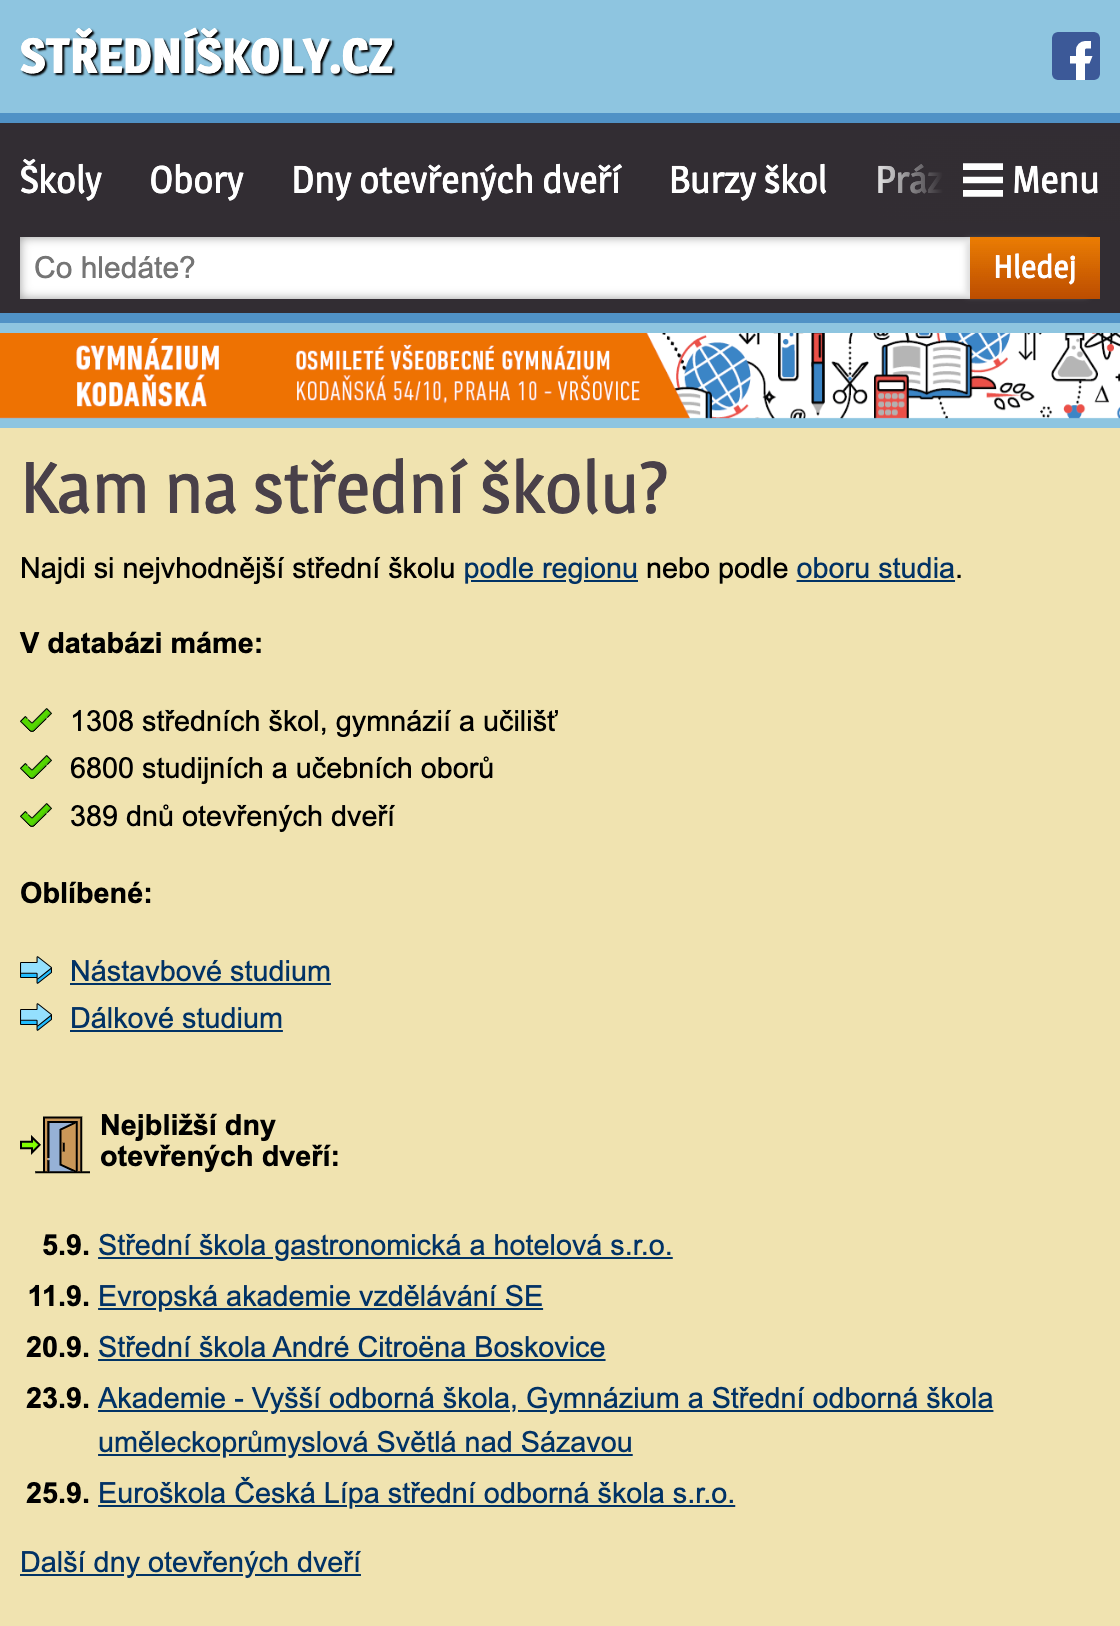 Портал со школами, гимназиями и колледжами Чехии. Источник: stredniskoly.cz